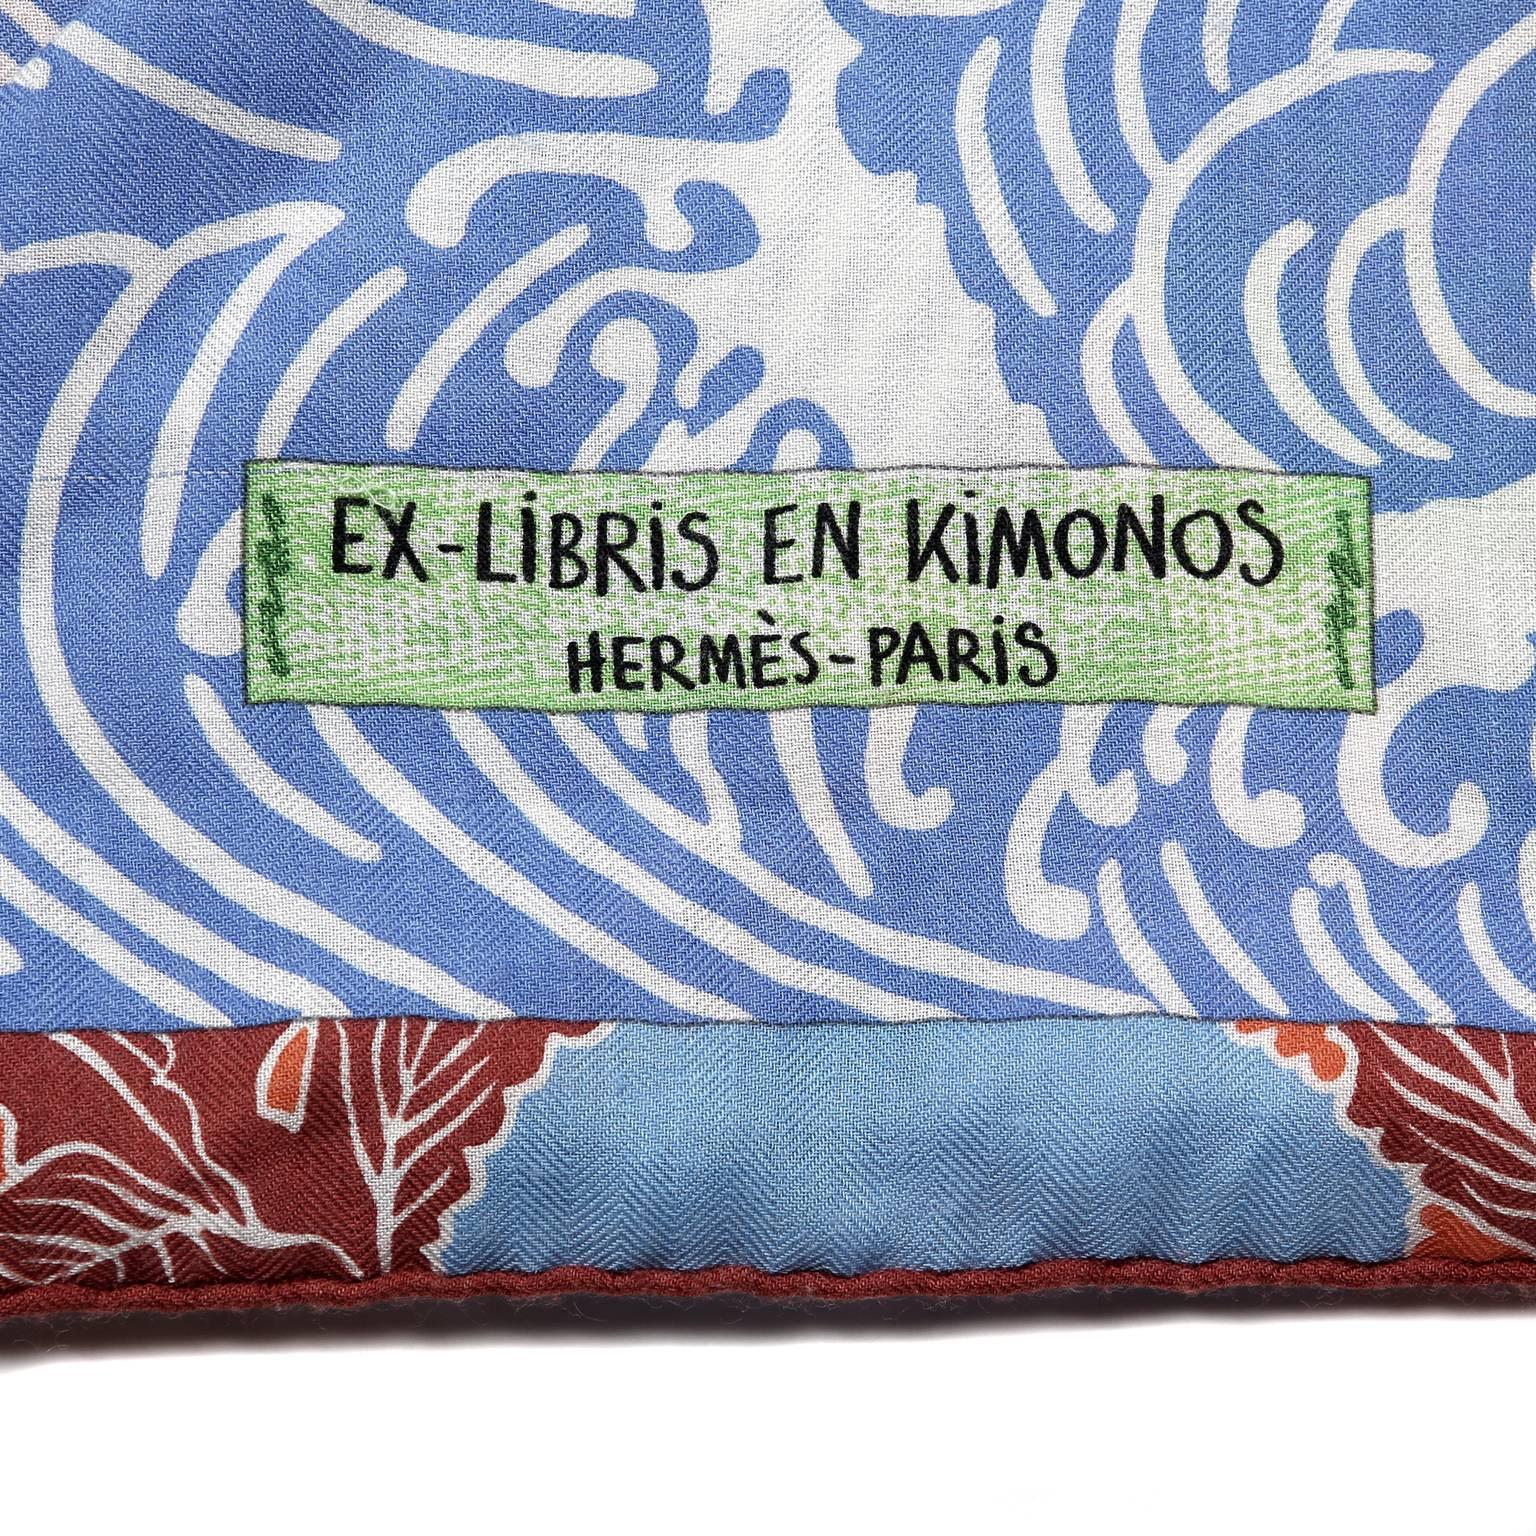 hermes ex libris en kimonos